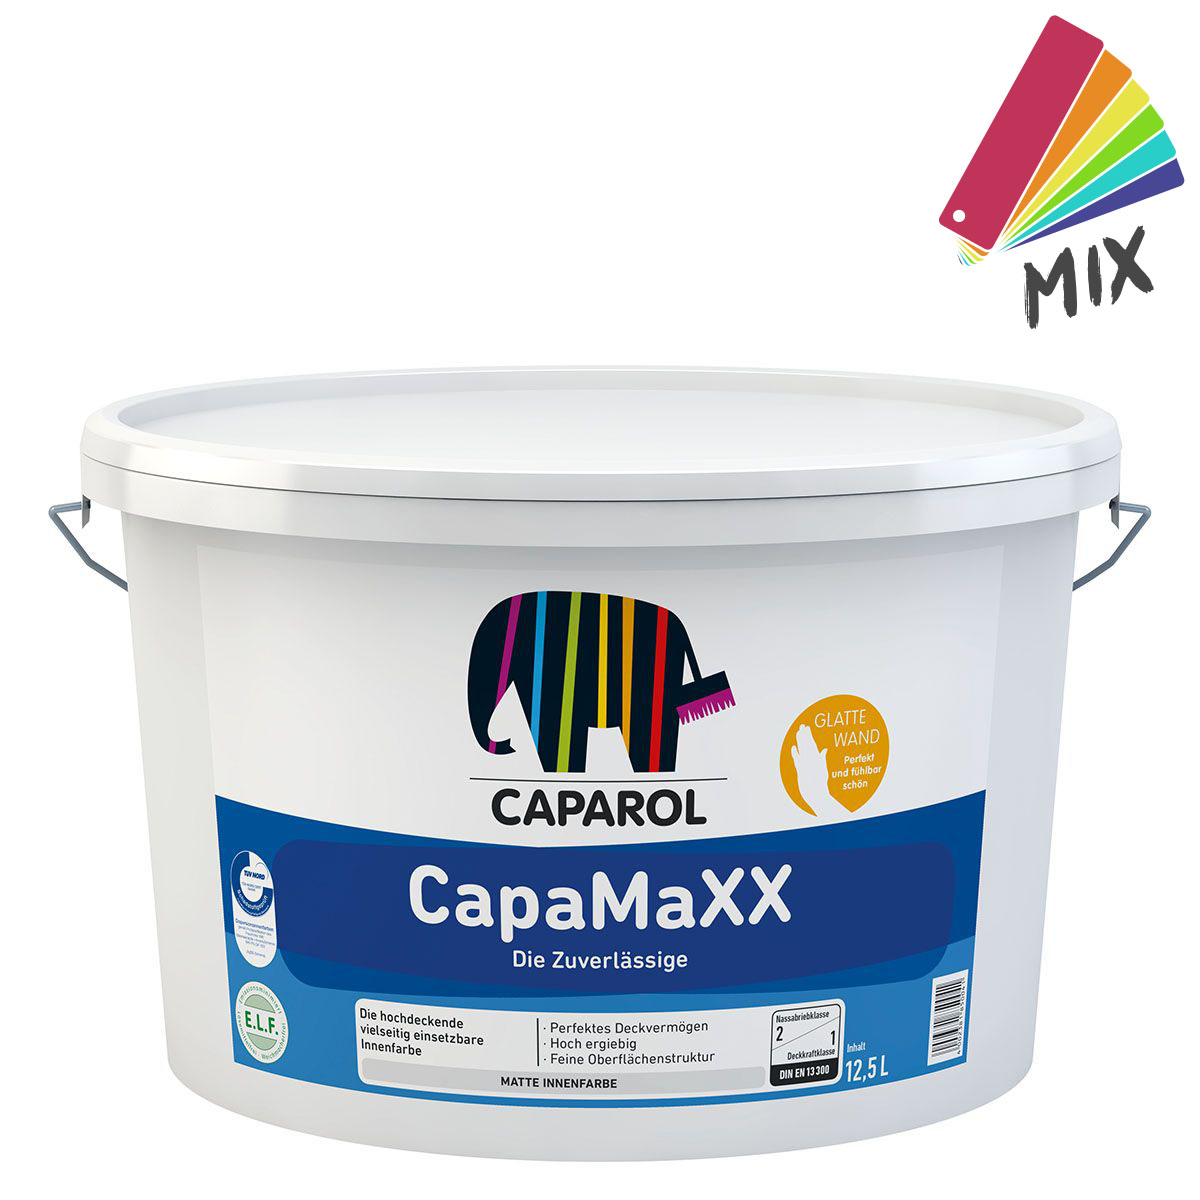 Caparol CapaMaXX 12,5L MIX PG B, inenfarbe, hochdeckend, stumpfmatt